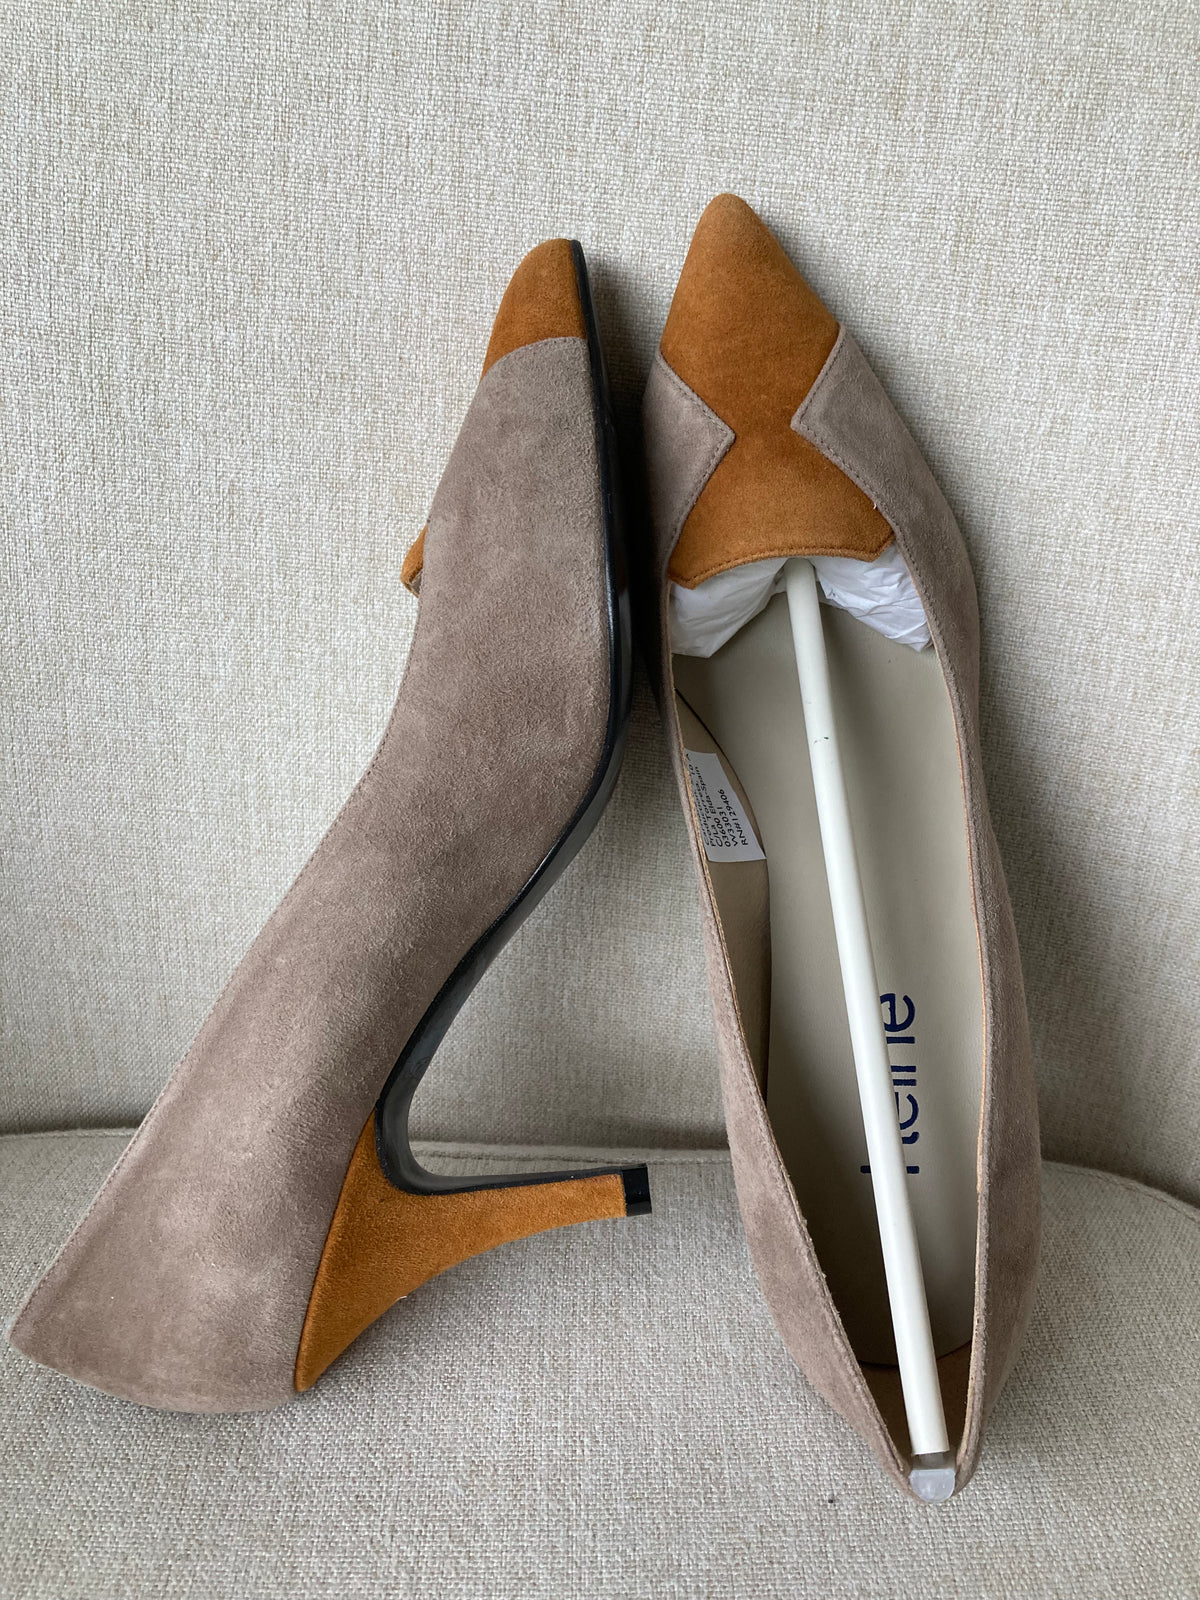 Statement handmade high heels by Heine size 6.5